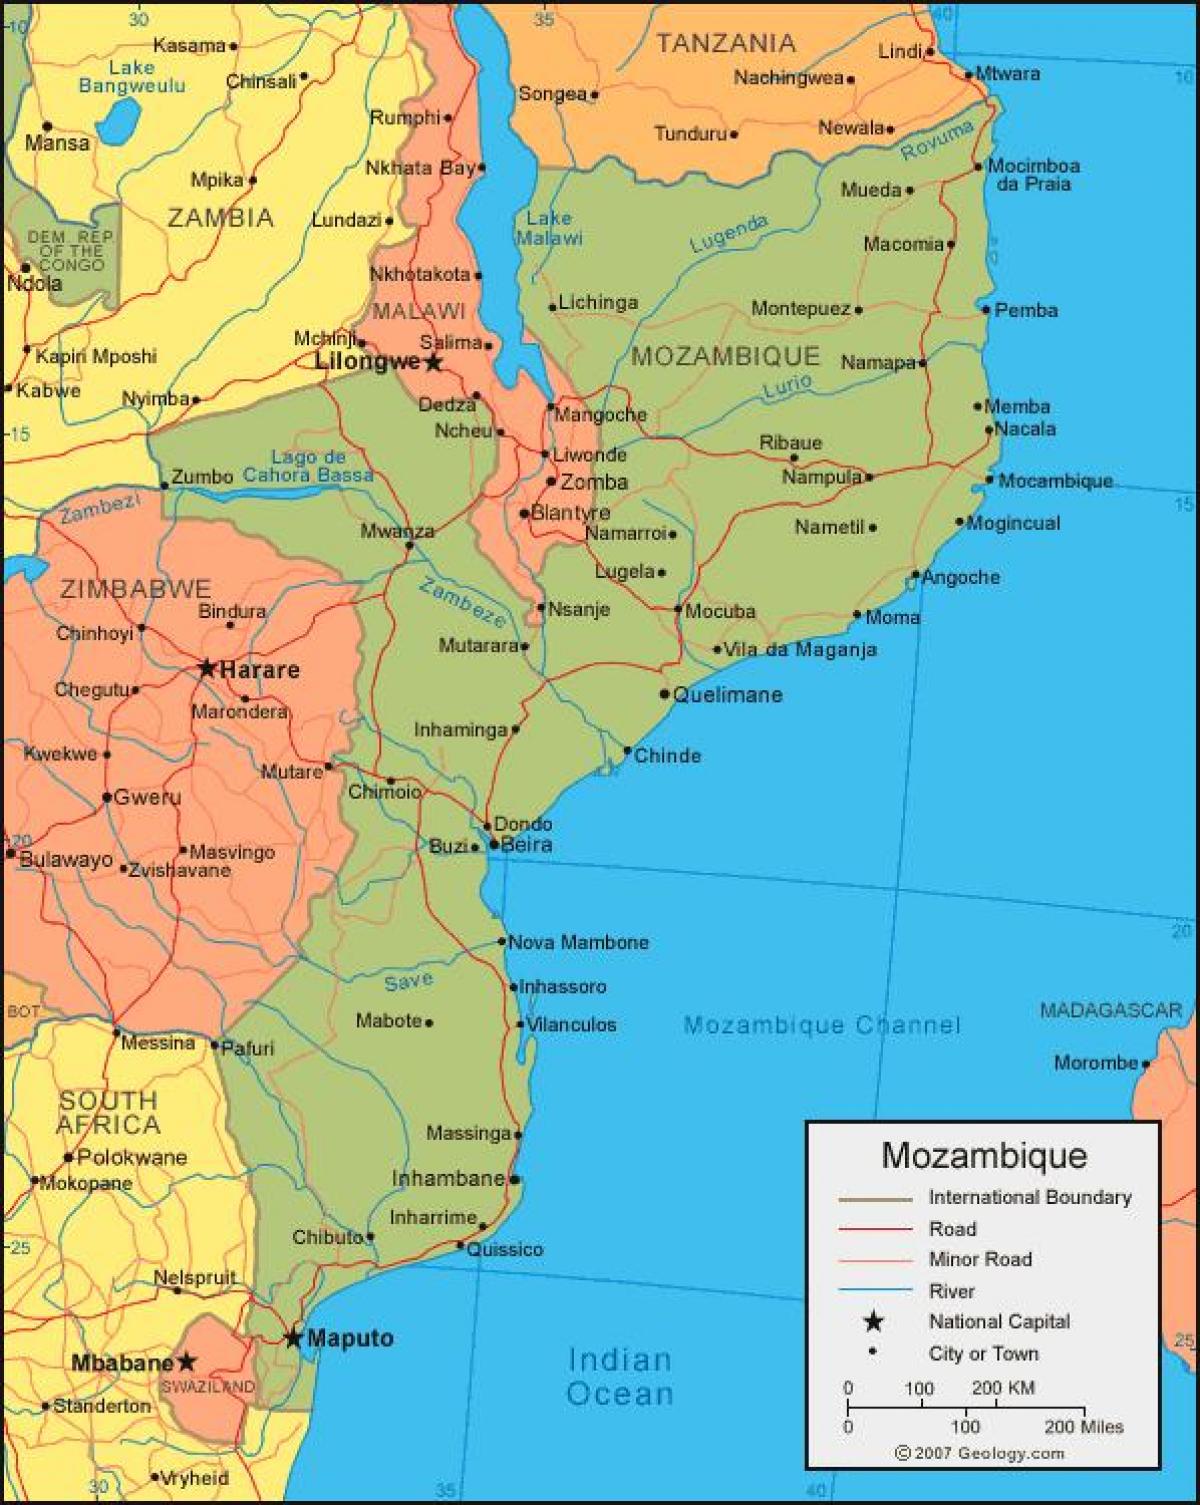 નકશો મોઝામ્બિક દરિયાકિનારો